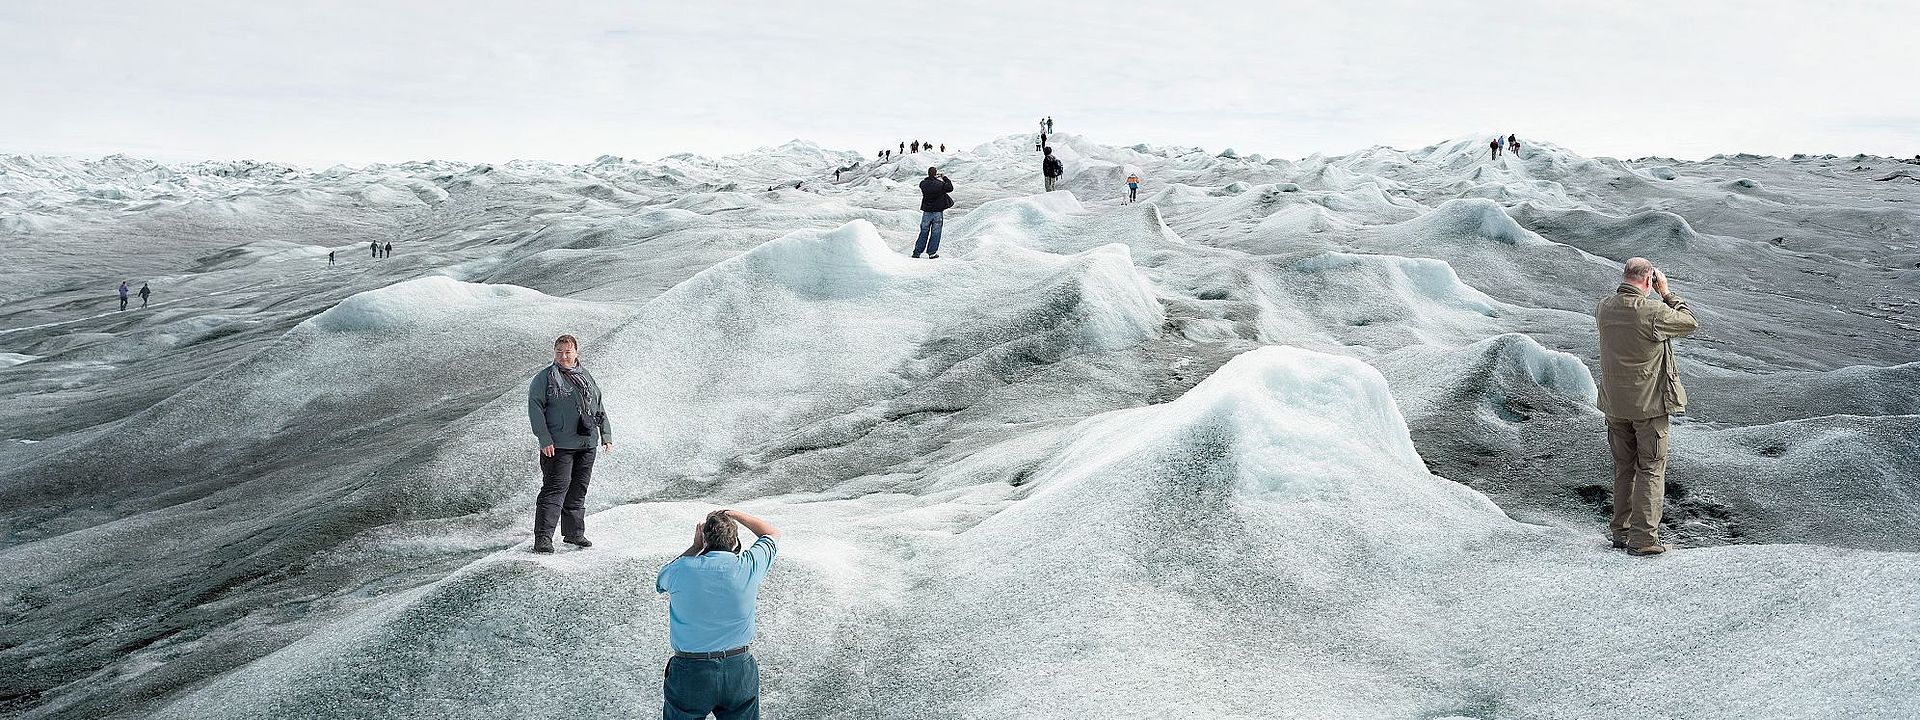 Eine Gruppe von Touristinnen und Touristen steht auf einer schmelzenden Eislandschaft und posiert an verschiedenen Punkten des Bildes für Fotos. An vielen Stellen der Eislandschaft hat sich schwarzer Ruß abgesetzt, das Eis ist dort sehr dunkel. Im Vordergrund ist eine große Pfütze aus Schmelzwasser.